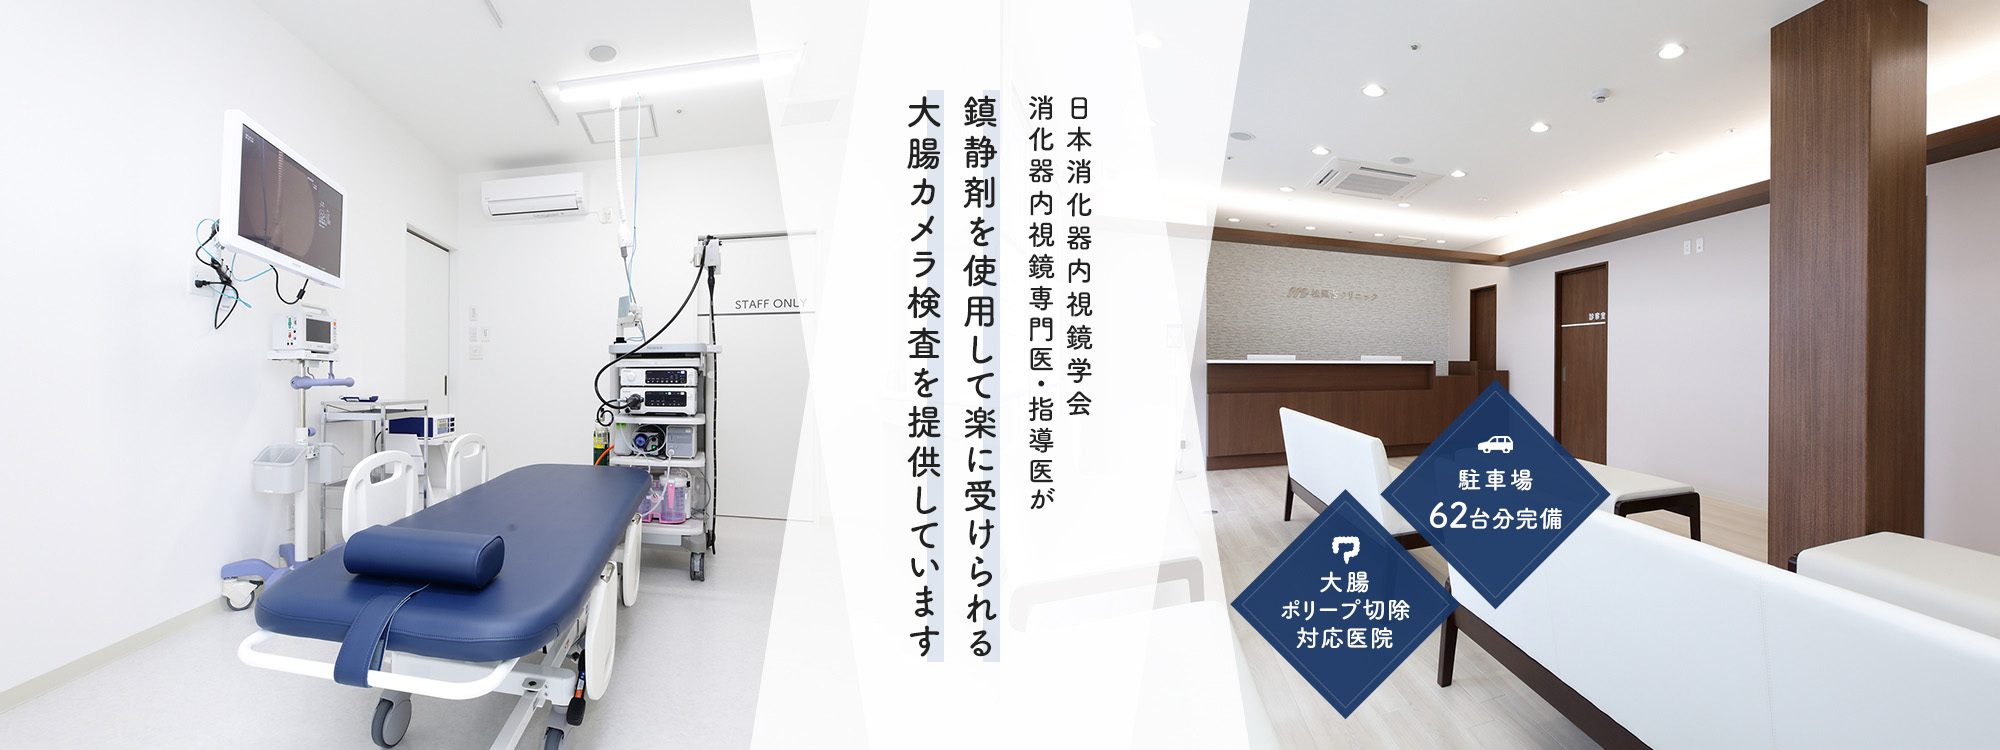 日本消化器内視鏡学会 消化器内視鏡専門医・指導医が鎮静剤を使用して楽に受けられる大腸カメラ検査を提供しています